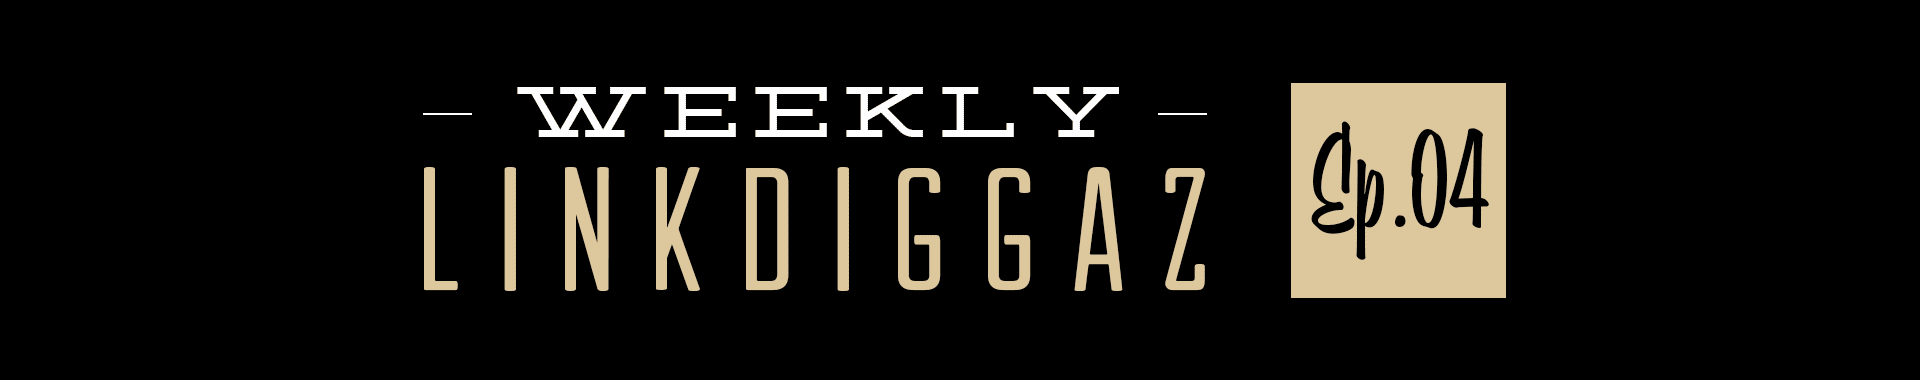 Weekly Linkdiggaz Ep.04